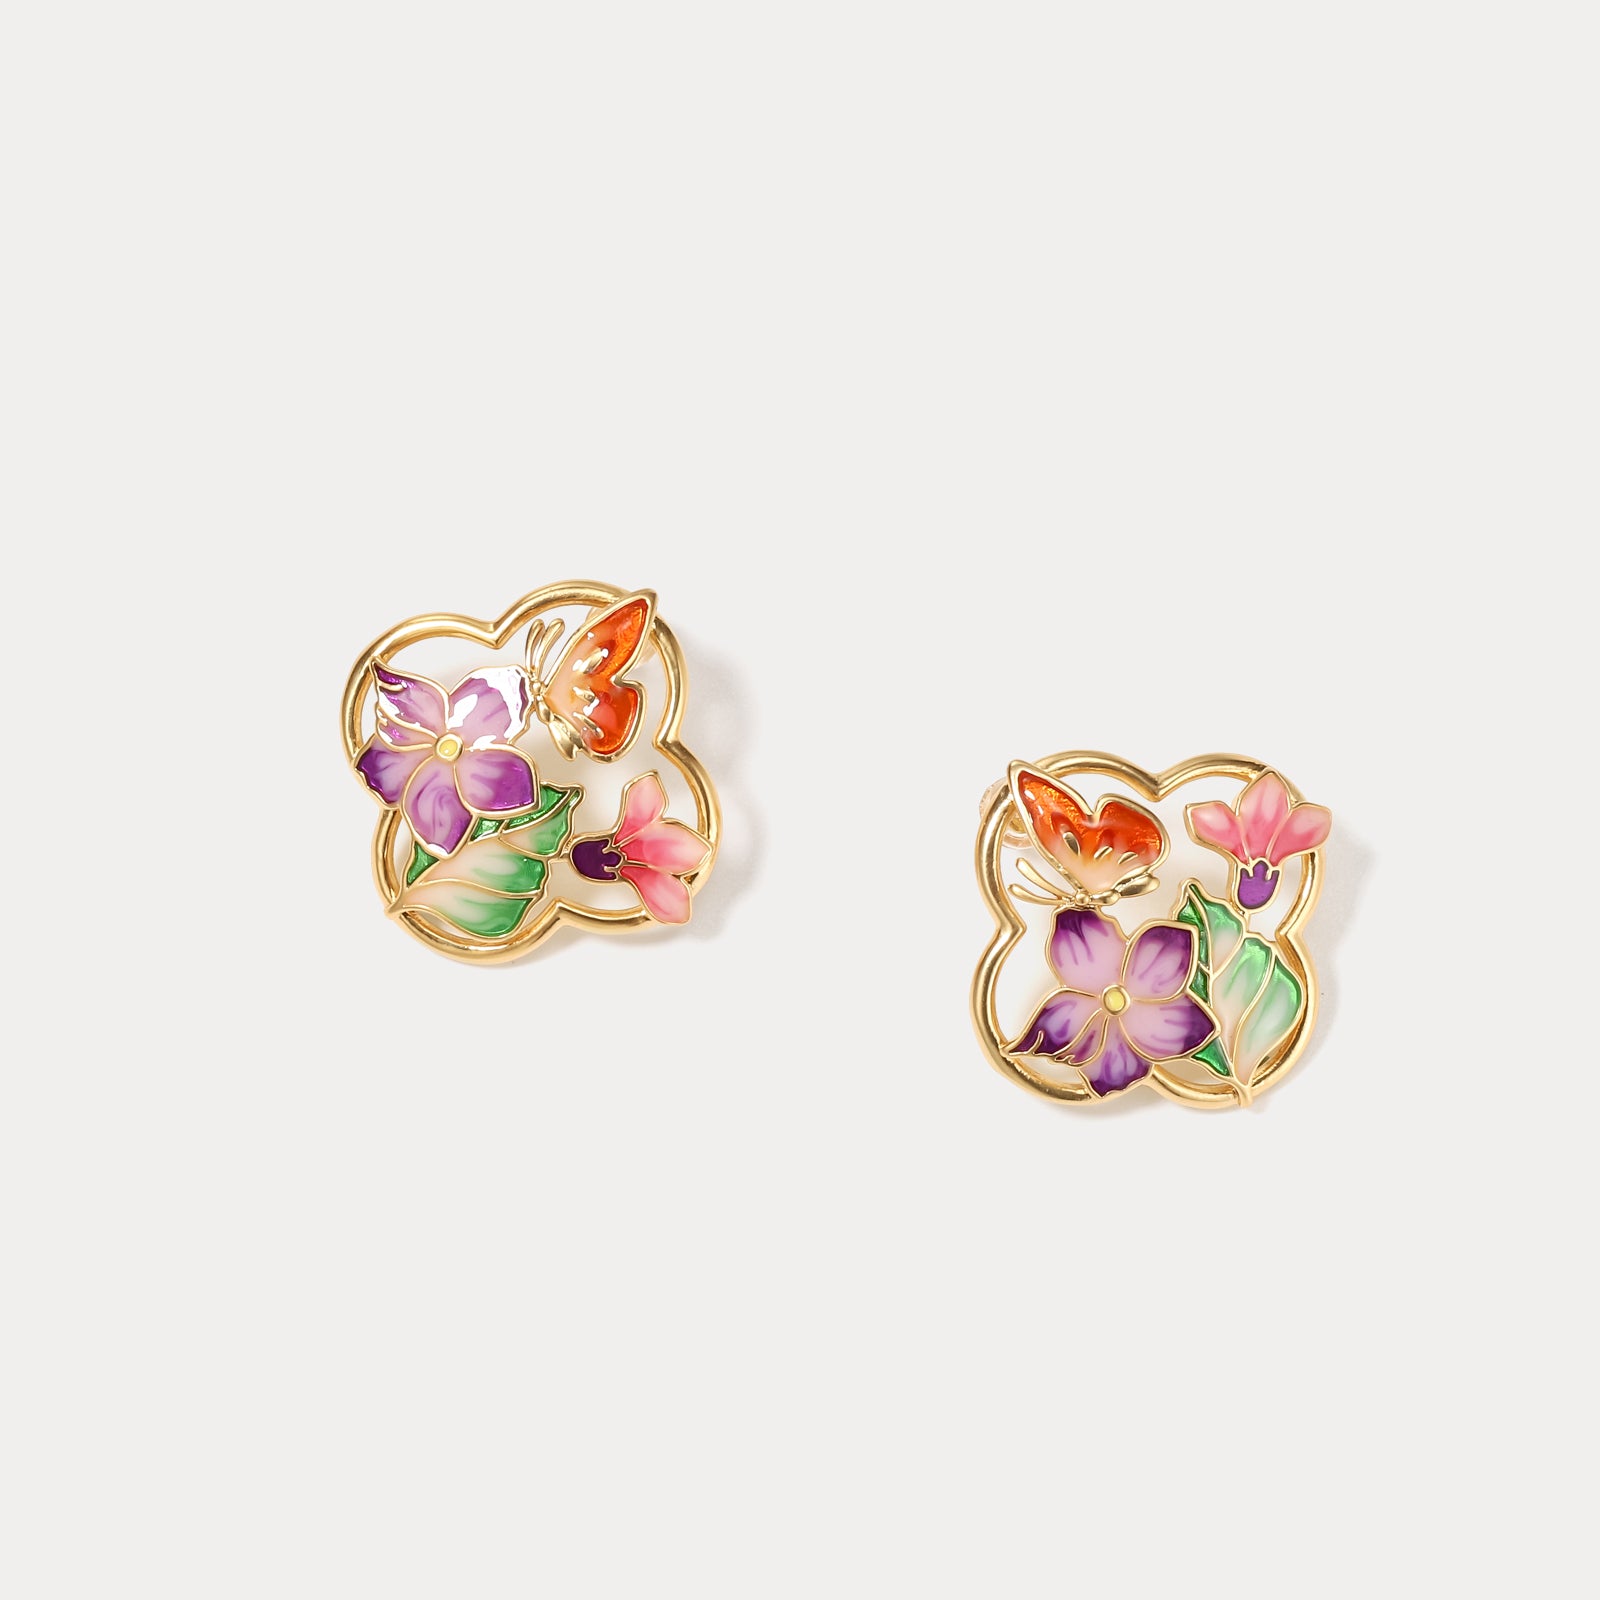 Vintage Garden Butterfly Earrings Gifts for Women